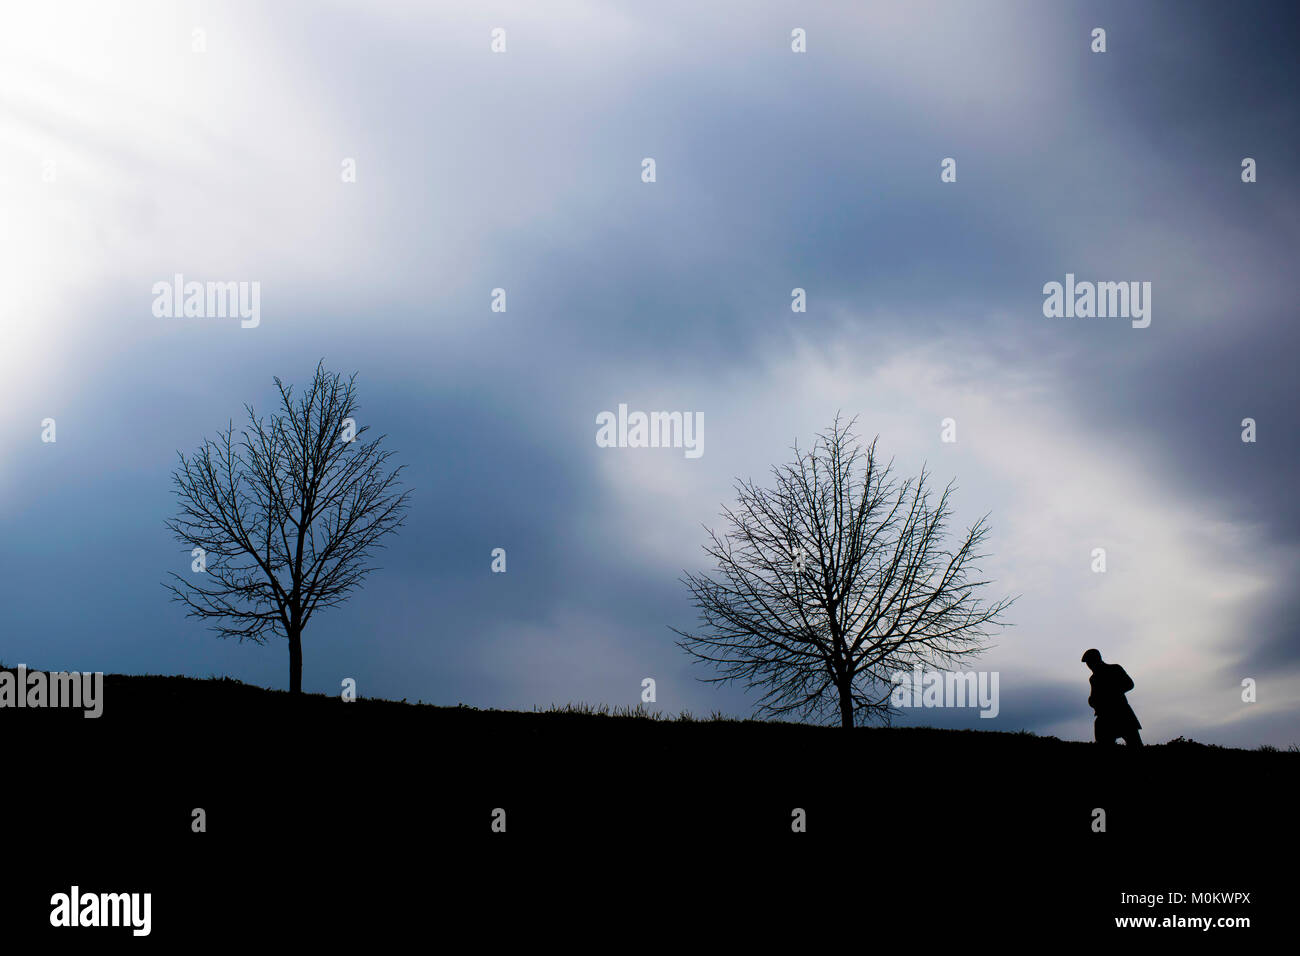 Die Silhouette eines Menschen zu Fuß ilustrating Depression Stockfoto